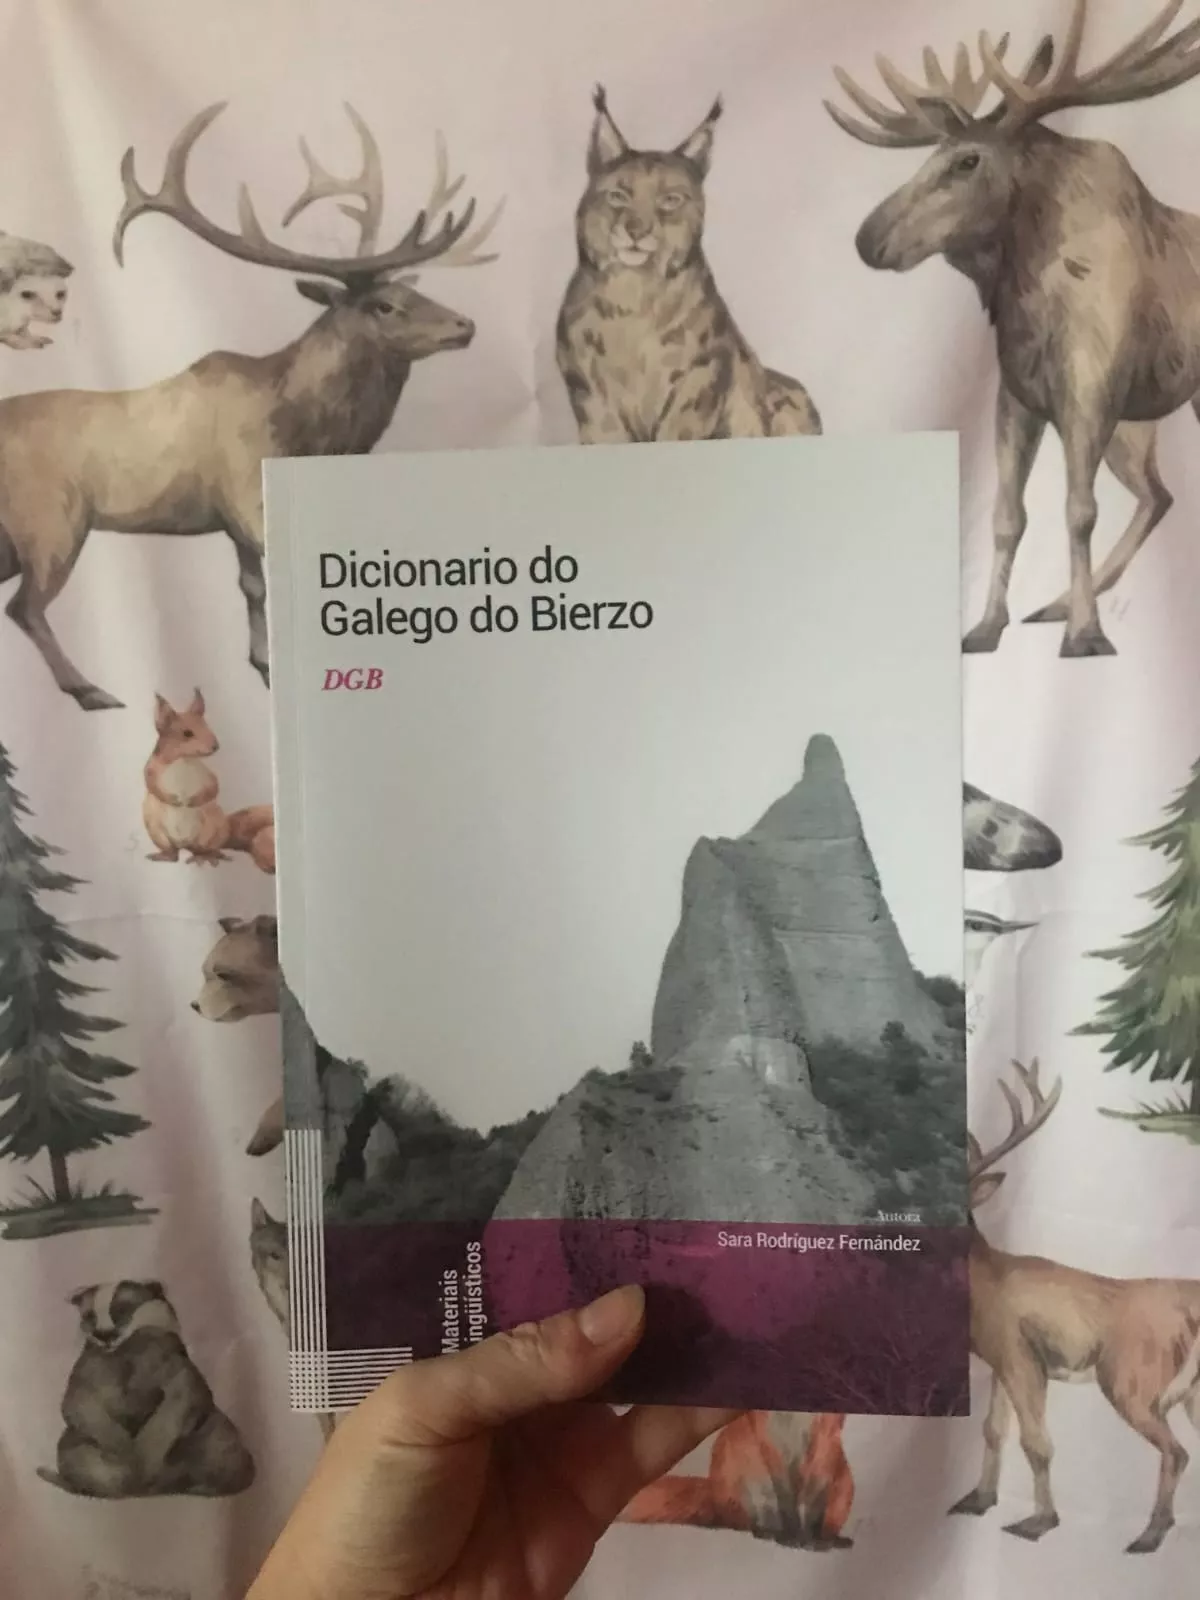  'O Dicionario do Galego do Bierzo' de Sara Rodríguez (2)